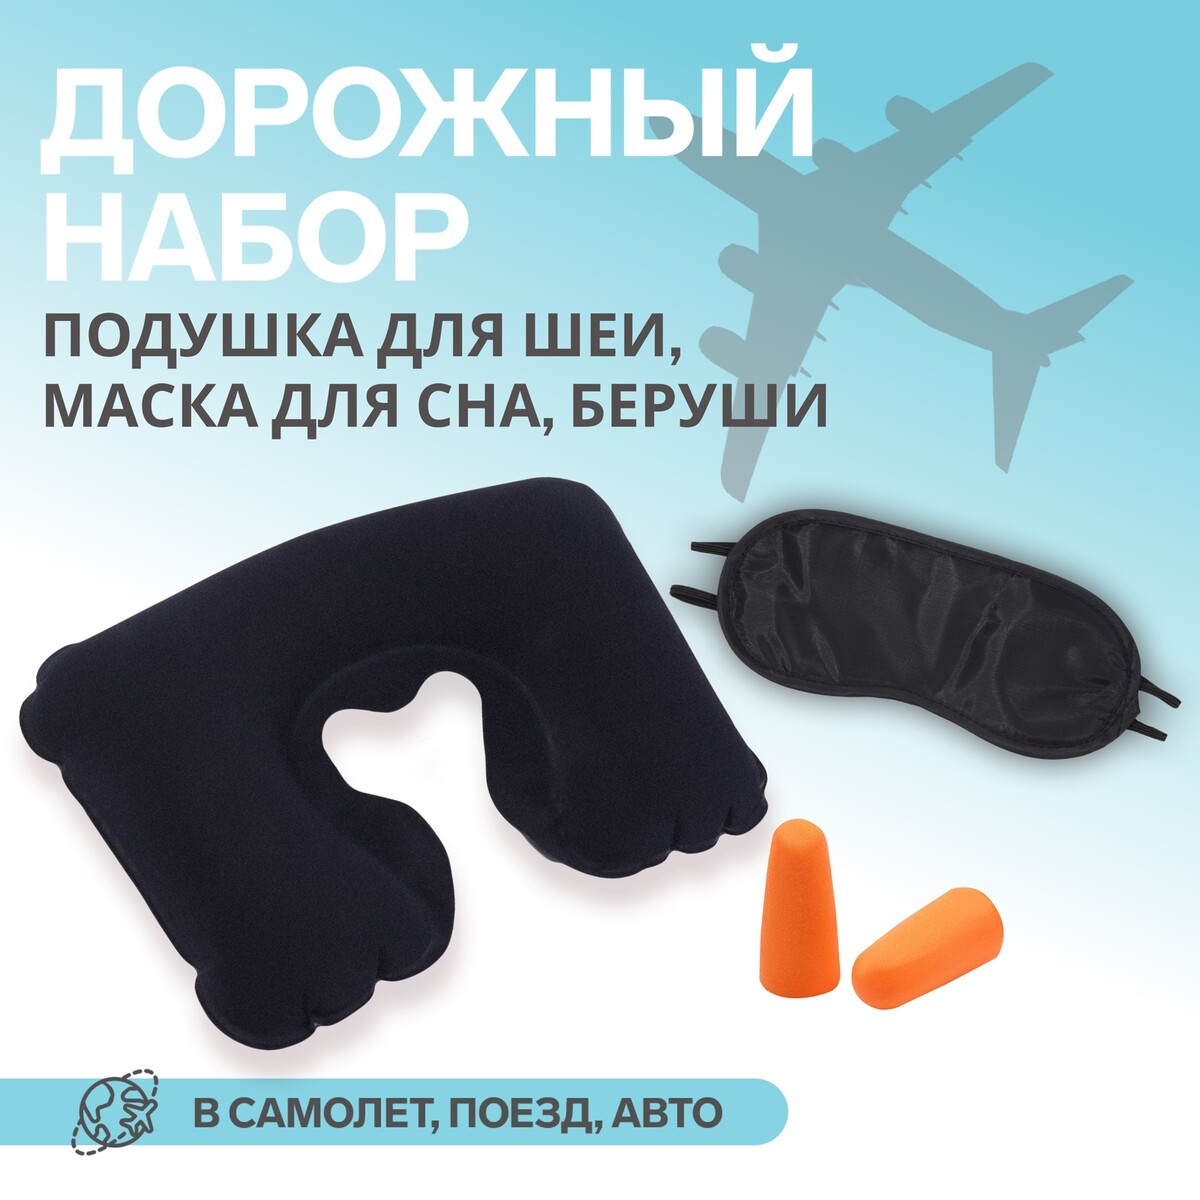 Набор туристический: подушка для шеи, маска для сна, беруши bradex набор для плавания шапочка очки зажим для носа беруши для бассейна